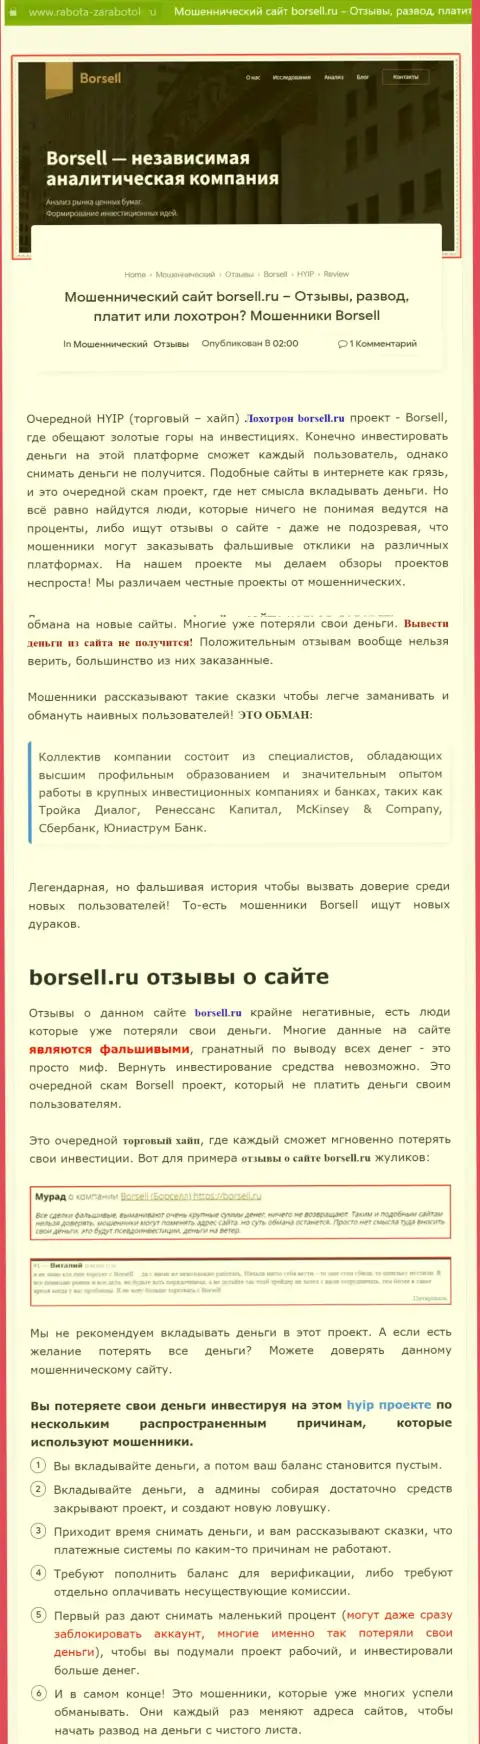 Подробно проанализируете предложения работы Borsell Ru, в организации обманывают (обзор деяний)